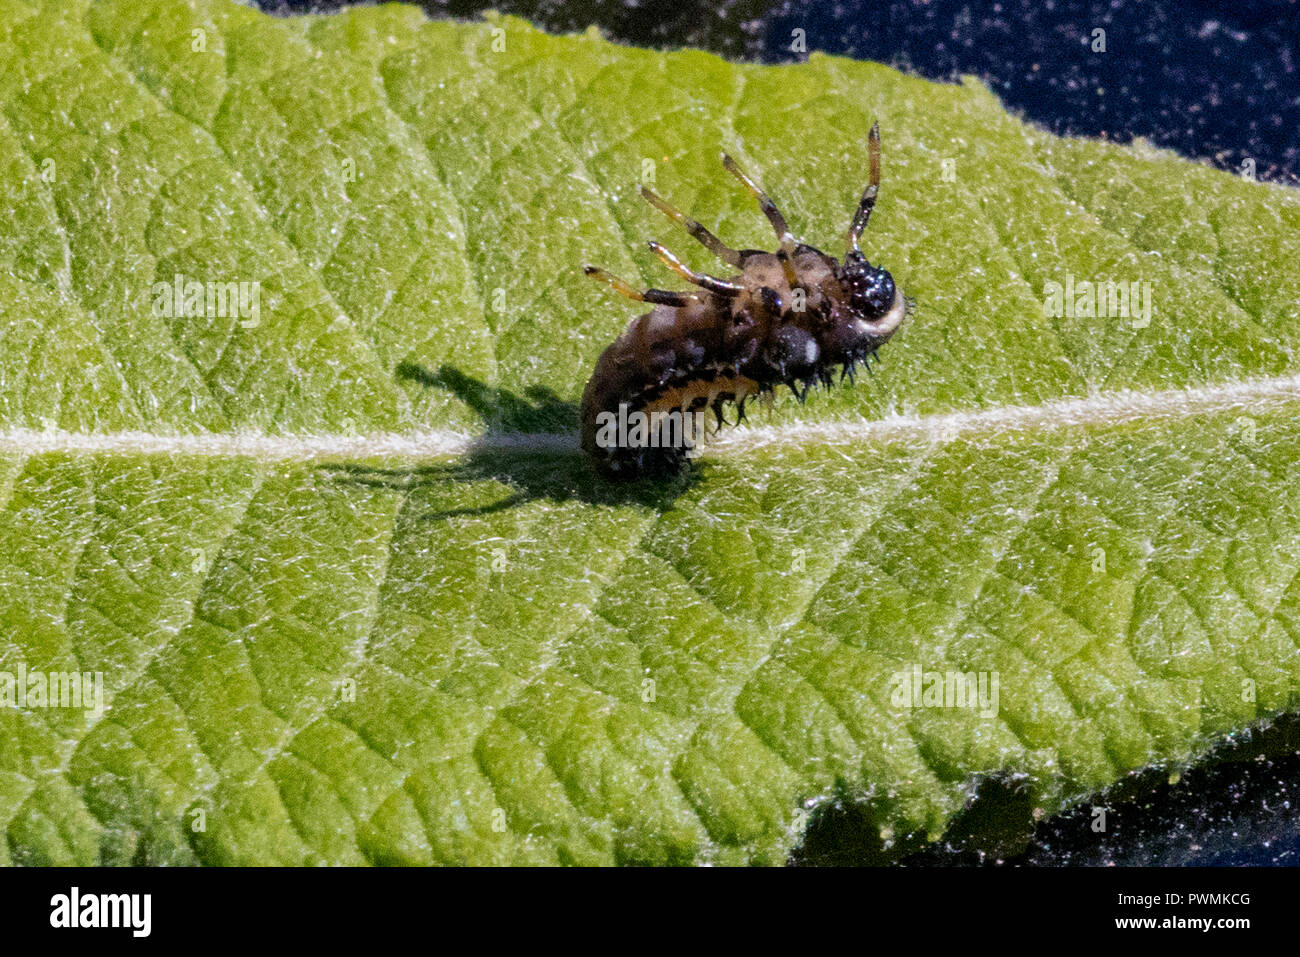 Gros plan d'une larve Coccinelle Arlequin reposant sur une feuille de saule vert dans un jardin Banque D'Images